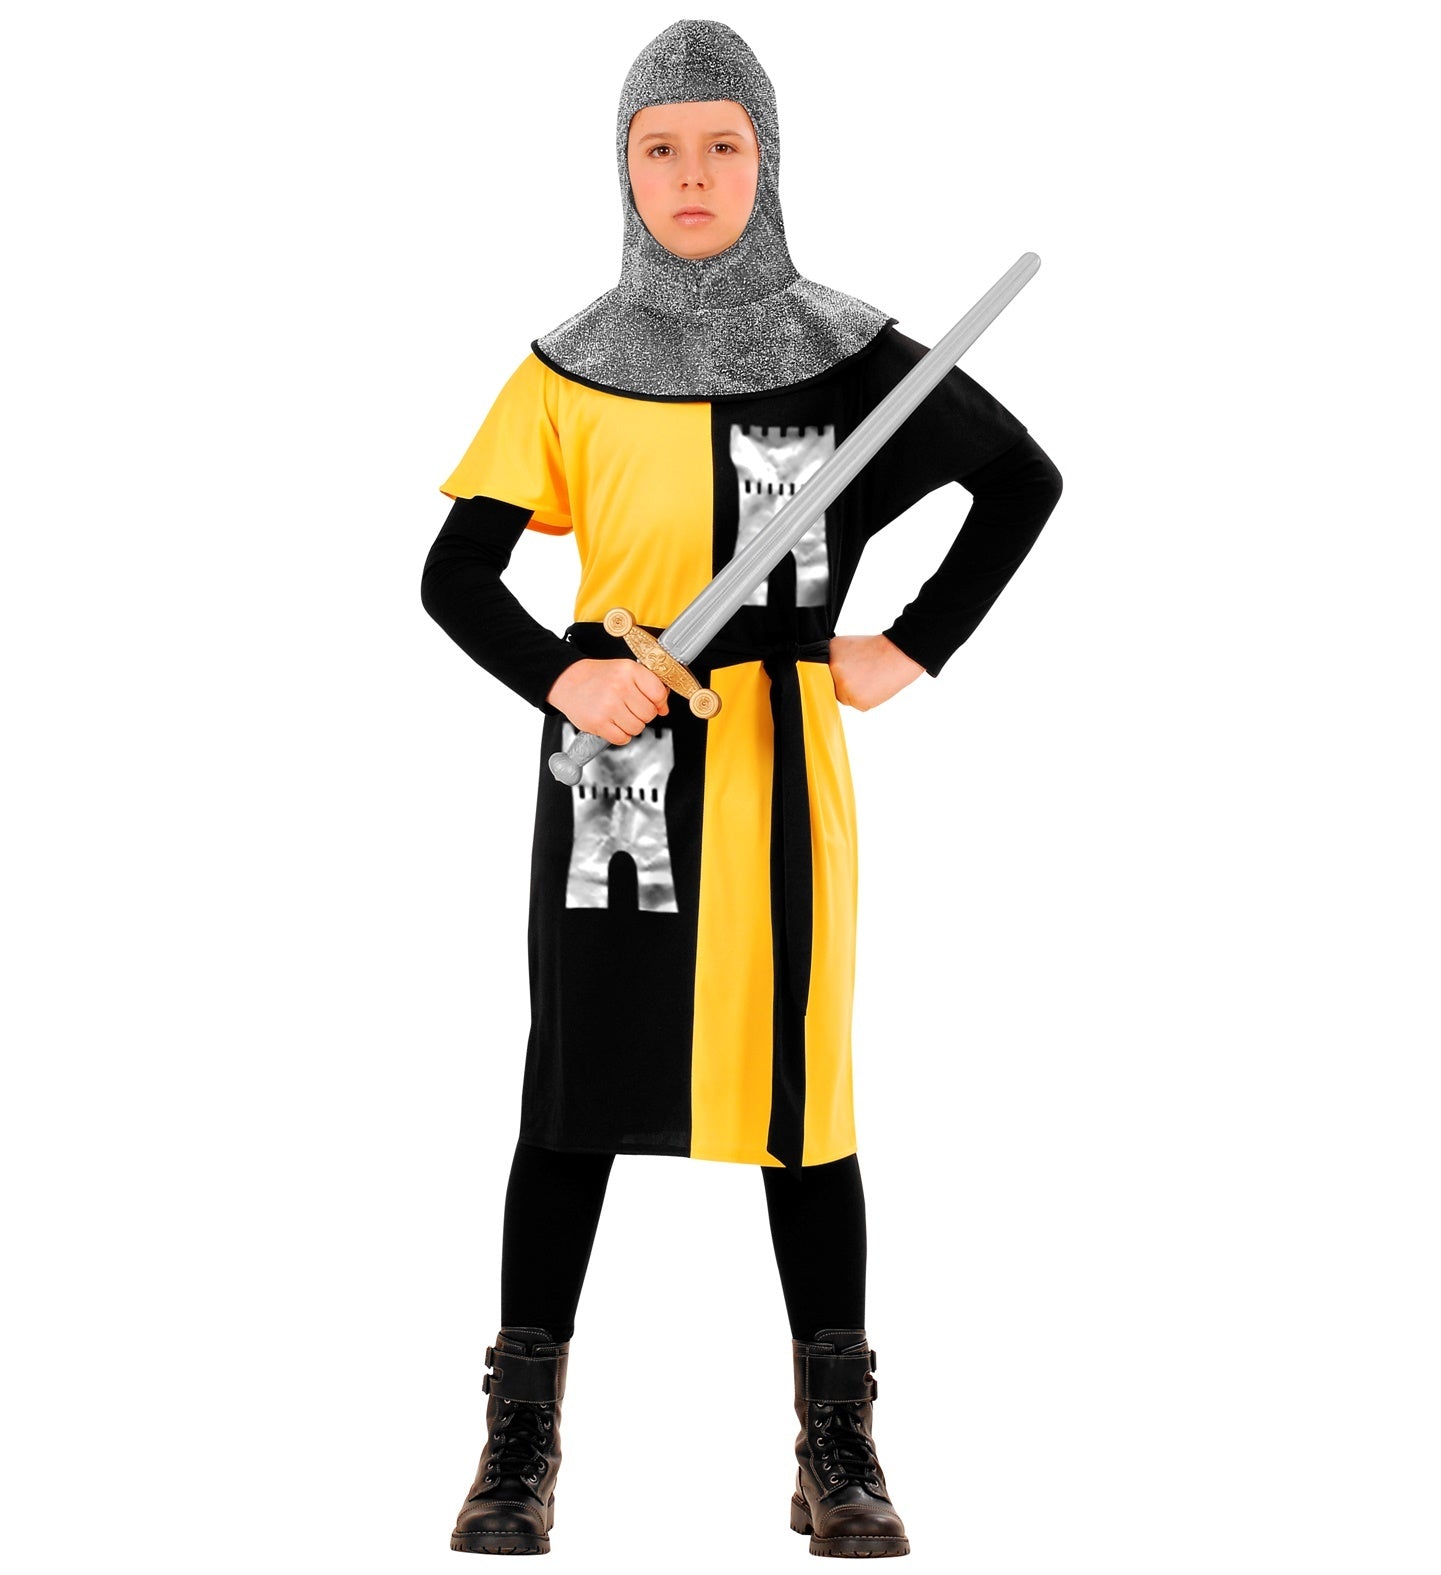 Widmann - Middeleeuwse & Renaissance Strijders Kostuum - Jonge Middeleeuwse Ridder Van Het Geelkasteel - Jongen - geel,zwart,zilver - Maat 158 - Carnavalskleding - Verkleedkleding